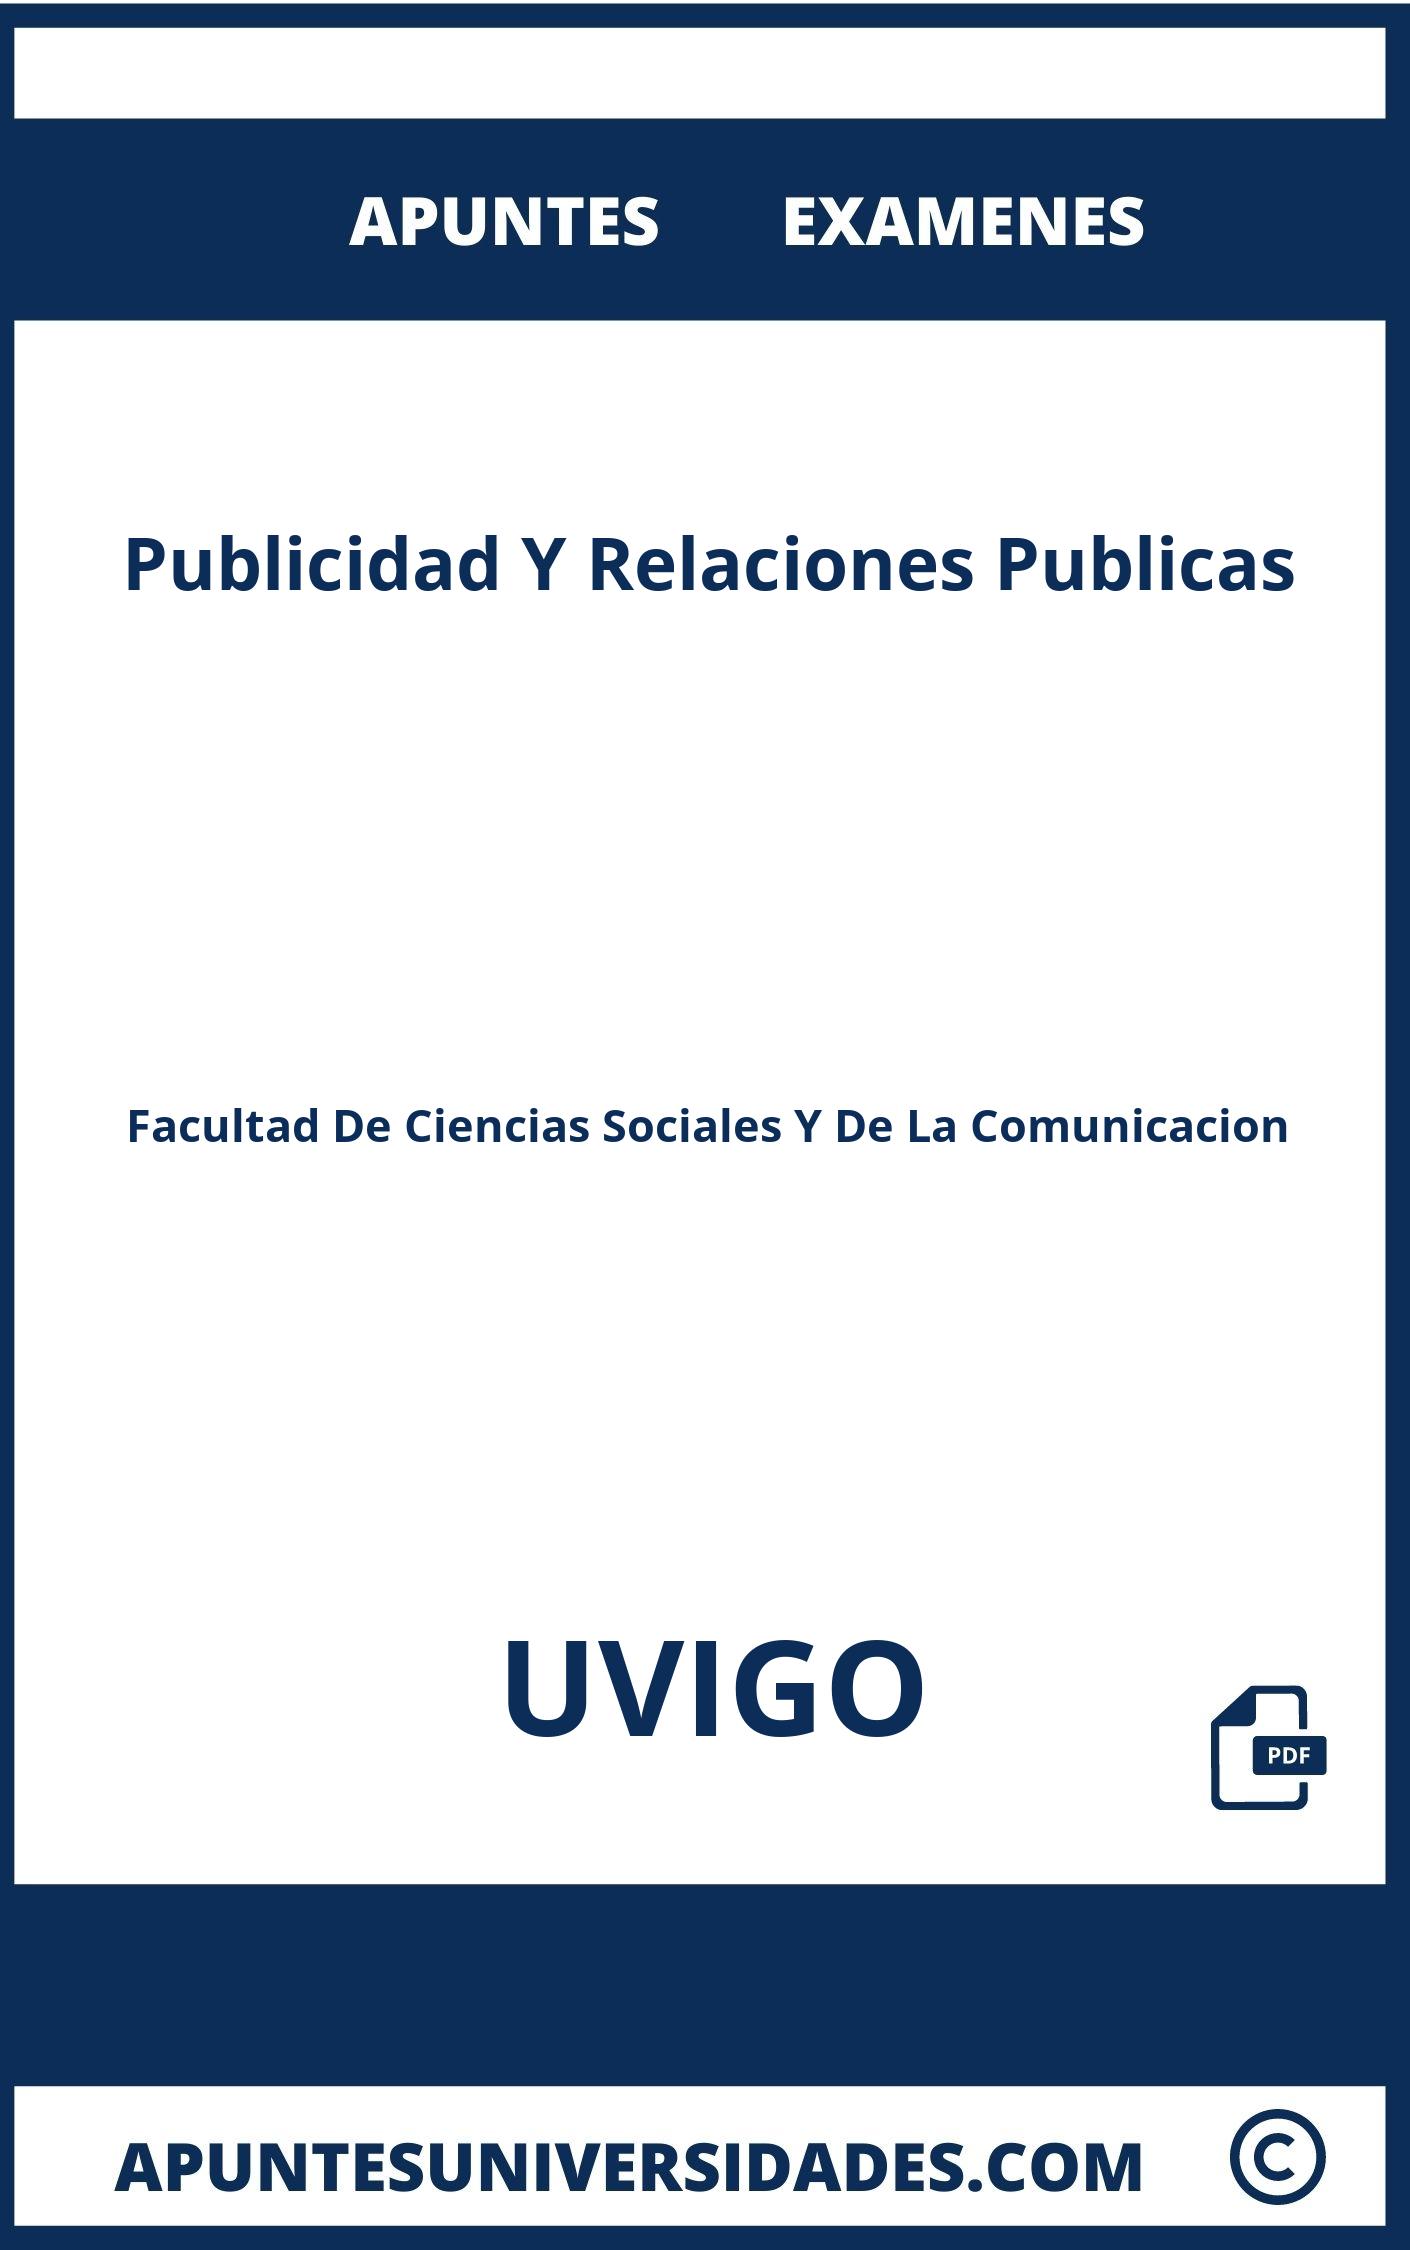 Apuntes y Examenes Publicidad Y Relaciones Publicas UVIGO